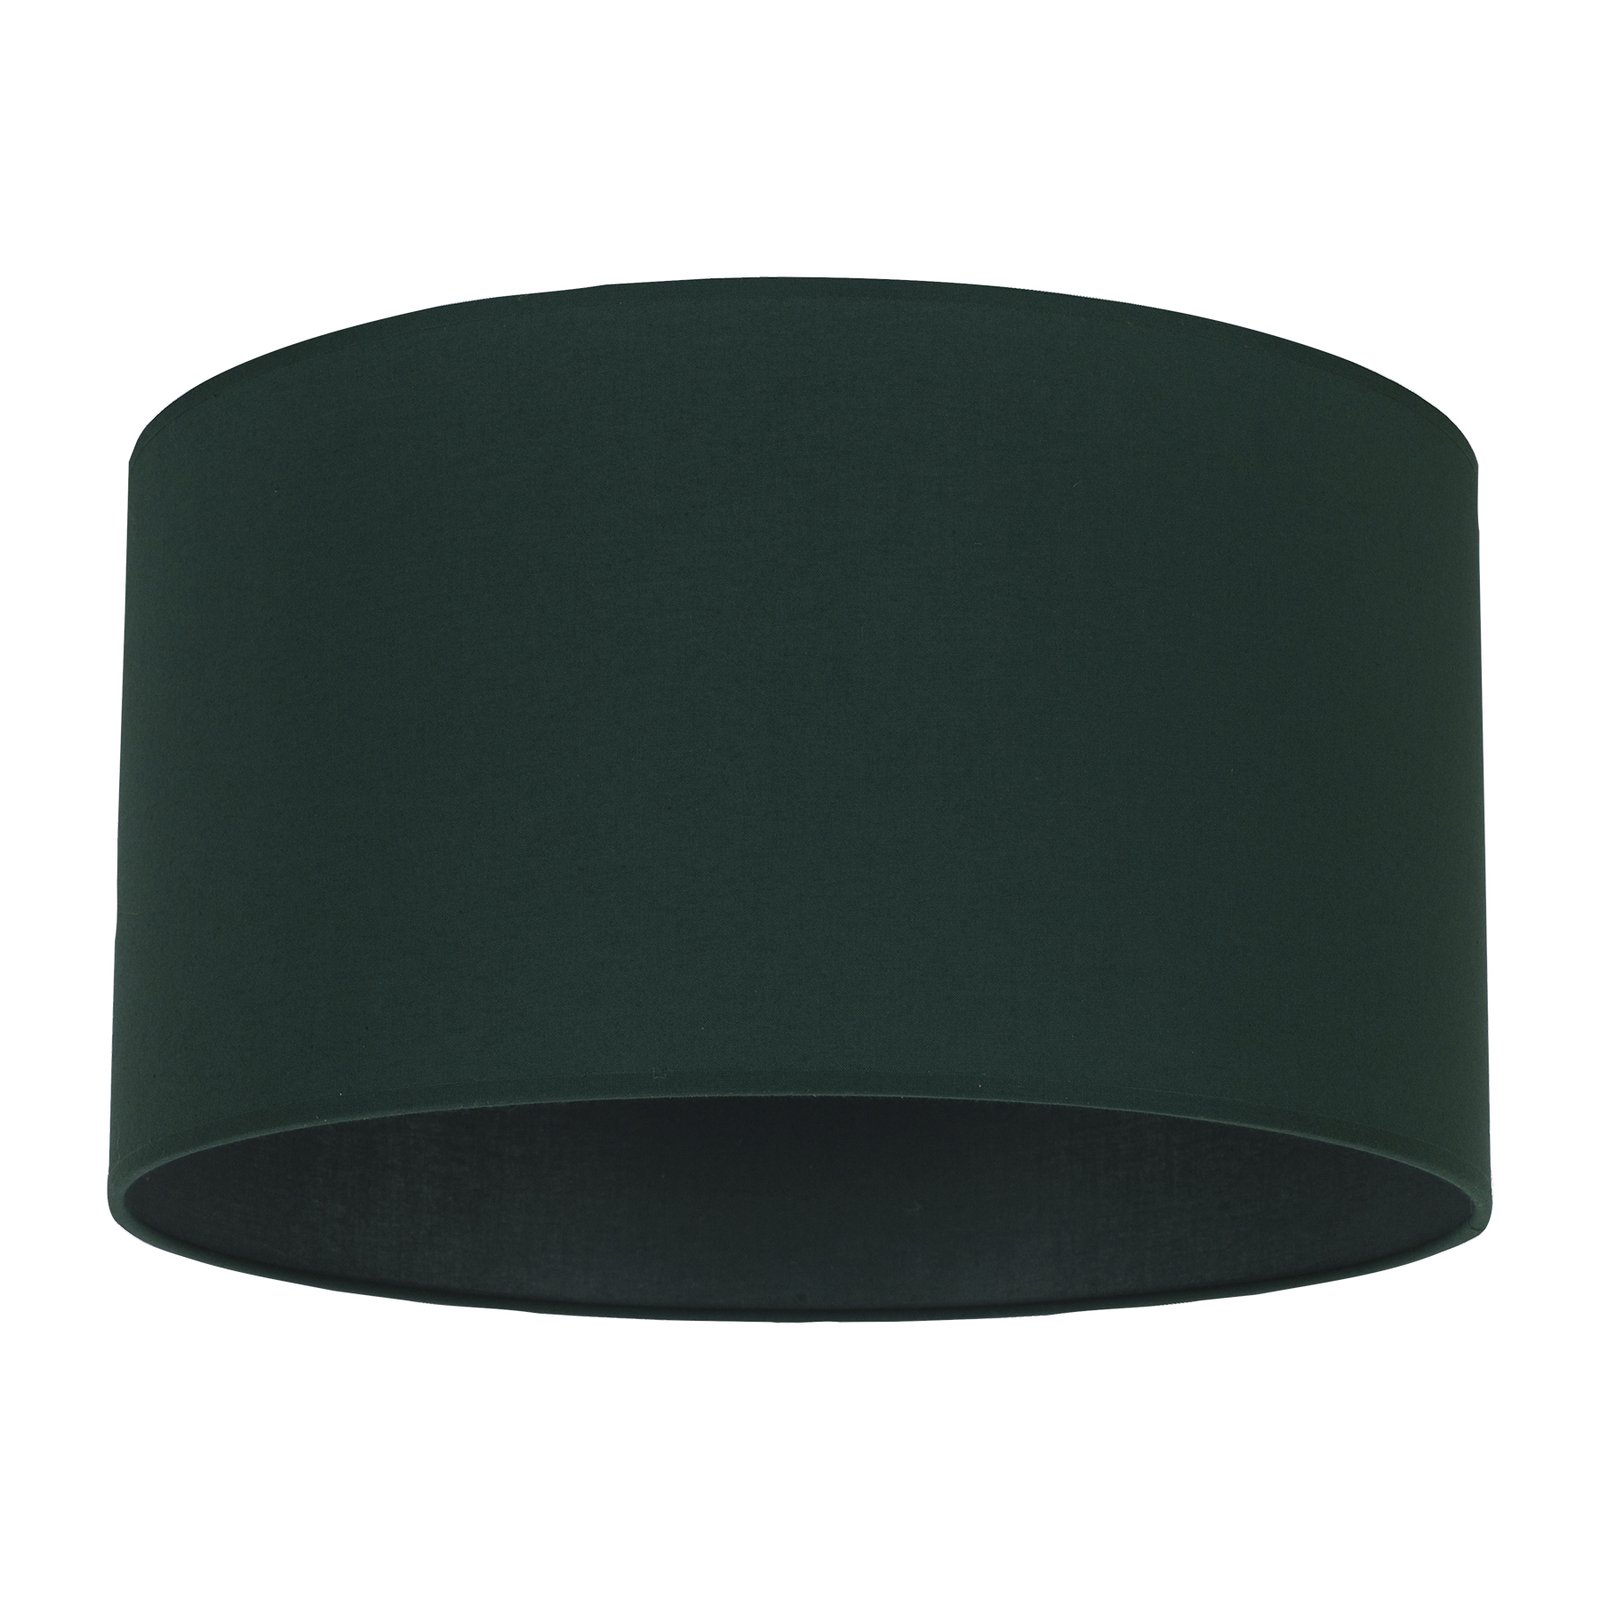 Lampeskjerm Roller, grønn, Ø 40 cm, høyde 22 cm